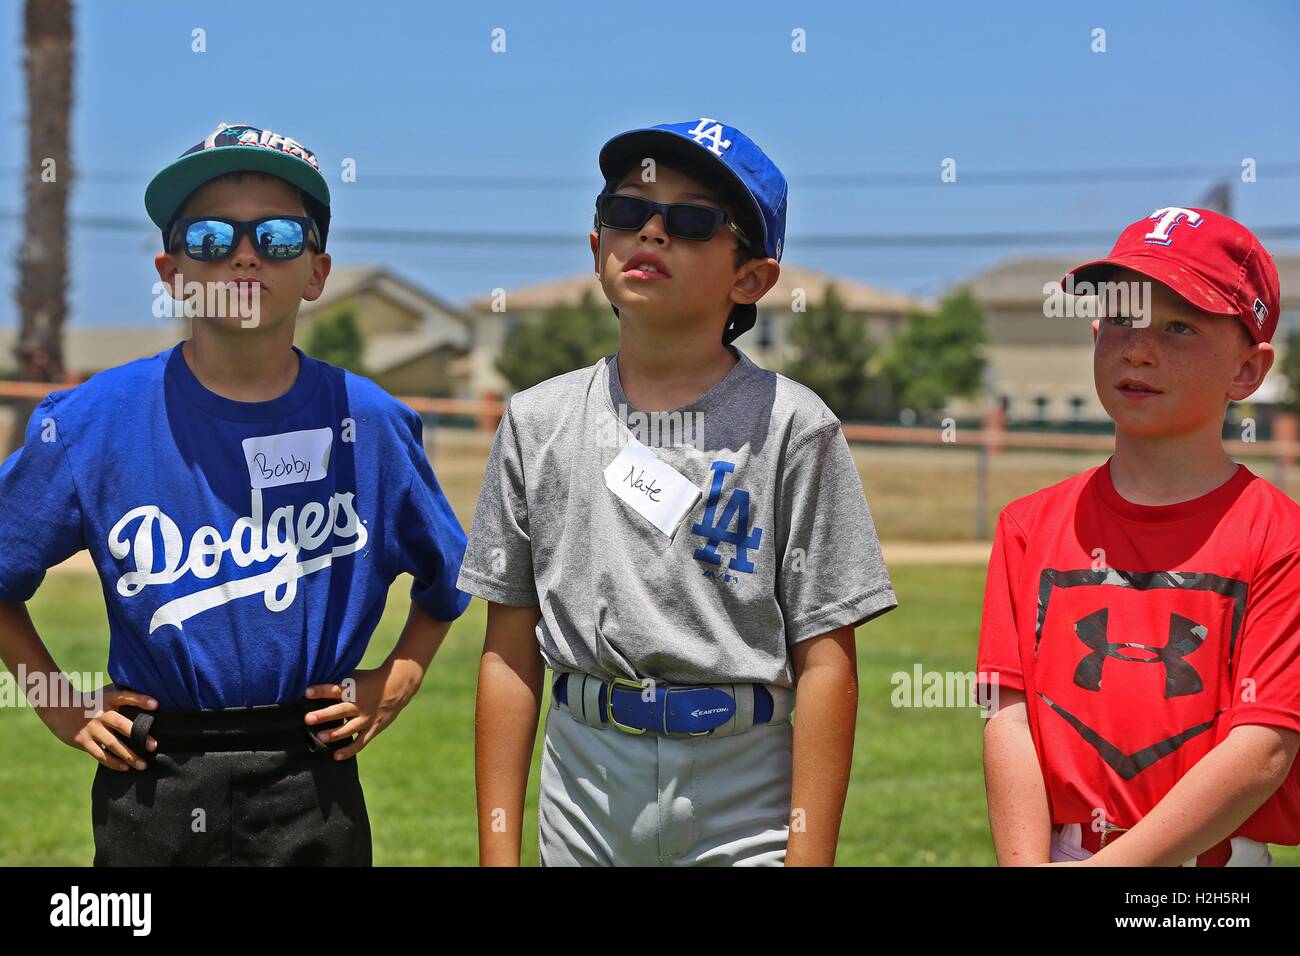 Los muchachos vestían prendas oficiales del equipo MLB soporte y espere instrucciones durante un verano Campamento de béisbol con el ex jugador profesional de béisbol Adrian Burnside en el cable de montaña campo de béisbol el 12 de julio de 2016 en Camp Pendleton, California. Foto de stock